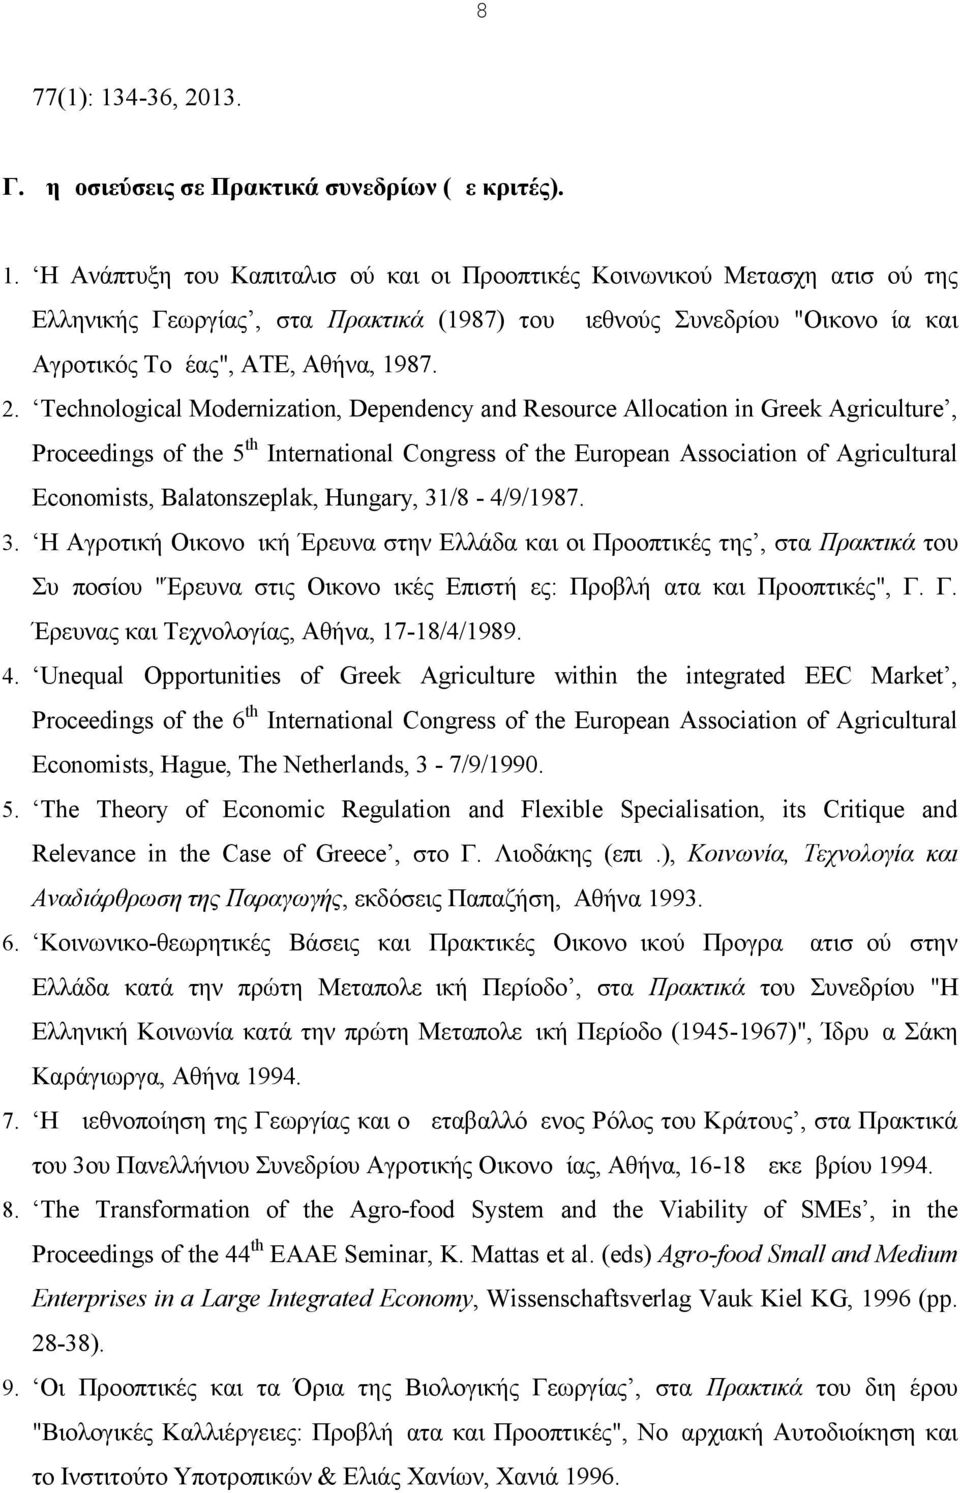 H Ανάπτυξη του Καπιταλισμού και οι Προοπτικές Κοινωνικού Μετασχηματισμού της Ελληνικής Γεωργίας, στα Πρακτικά (1987) του Διεθνούς Συνεδρίου "Οικονομία και Αγροτικός Τομέας", ΑΤΕ, Αθήνα, 1987. 2.